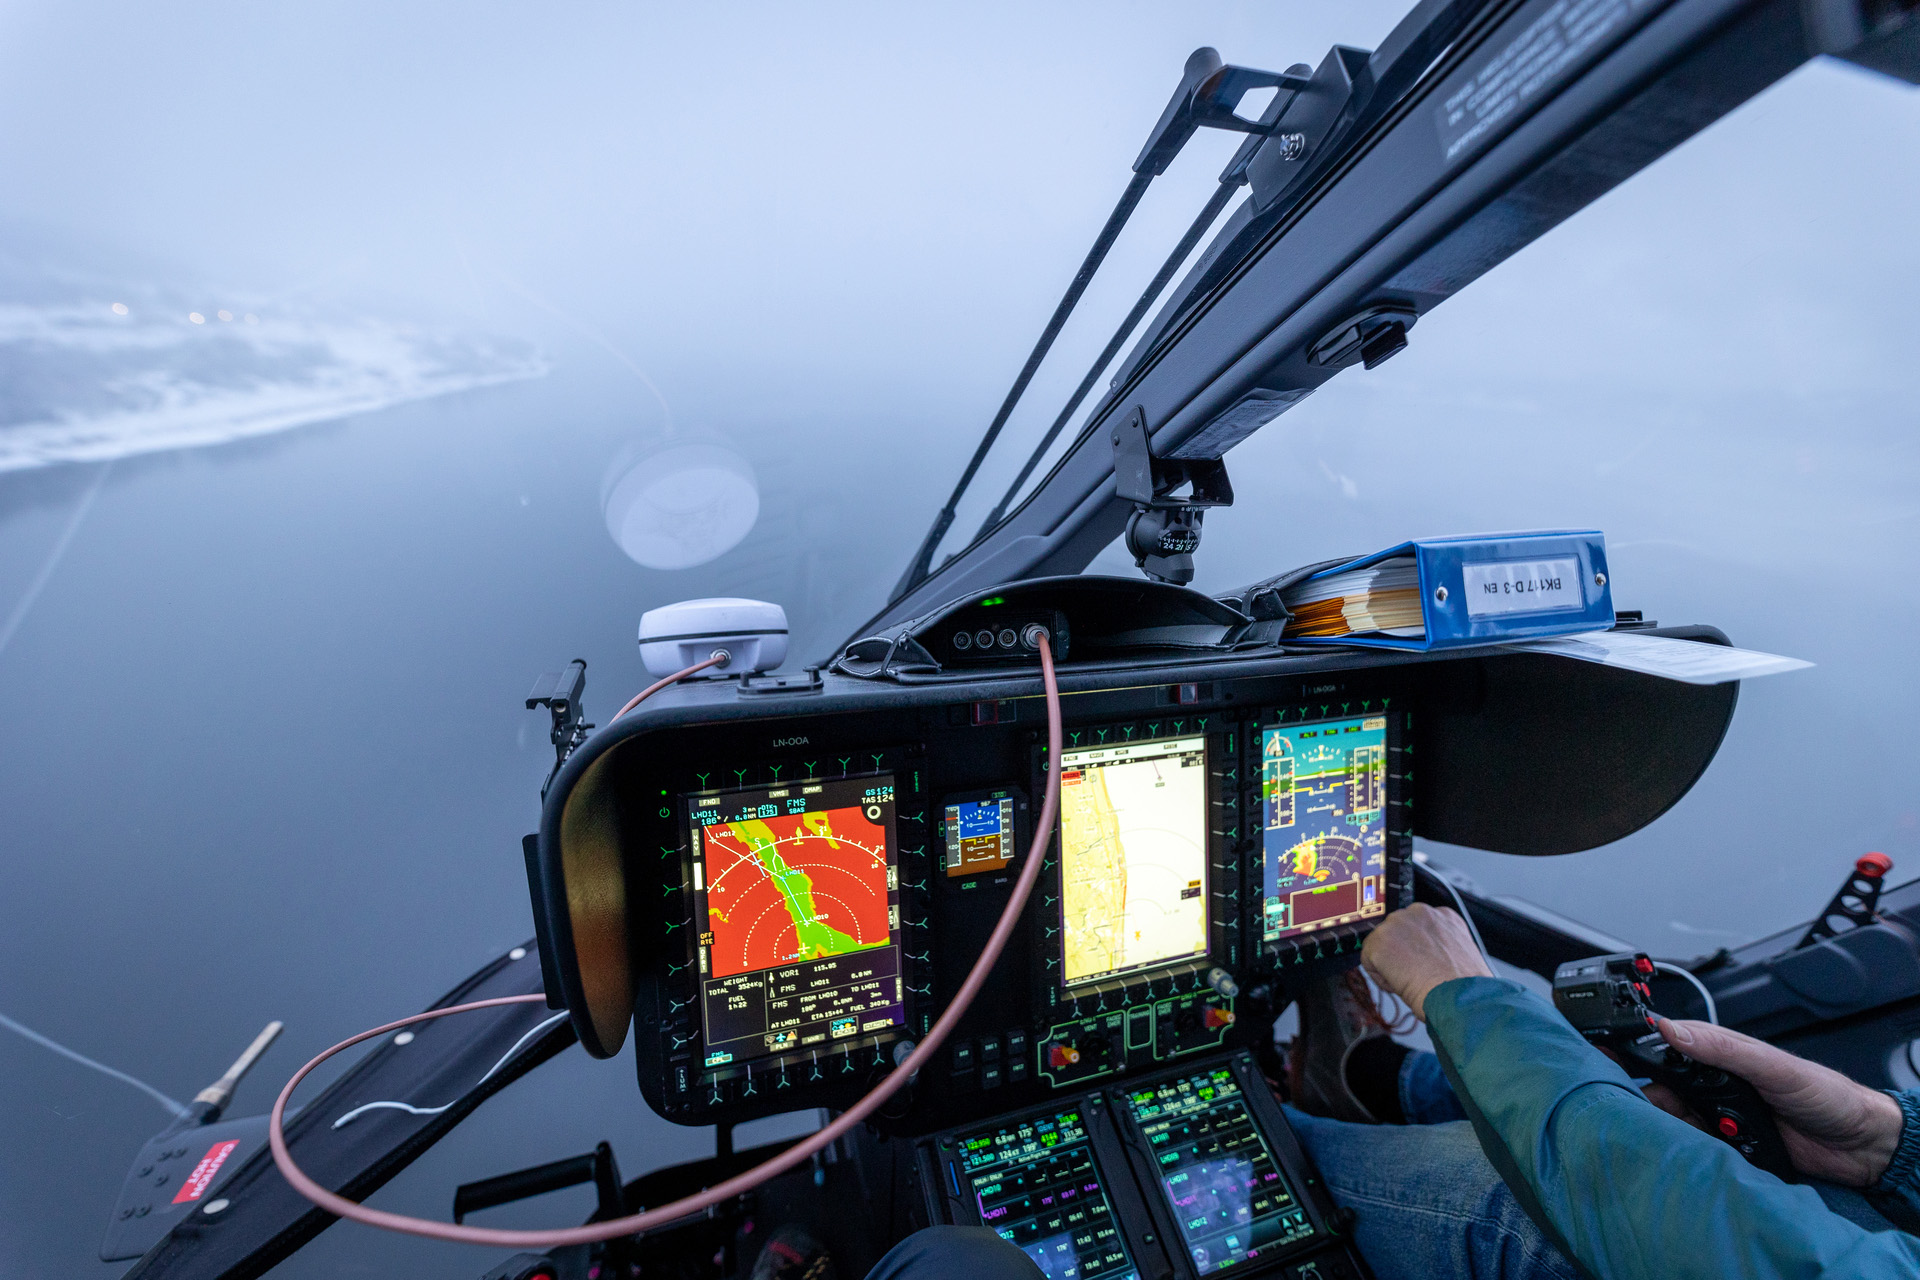 PinS-rute flys inn over Mjøsa. Dette er GPS-baserte innflygningsprosedyrer som lar helikoptrene «fly i blinde». Disse rutene lages og finansieres av Stiftelsen Norsk Luftambulanse.